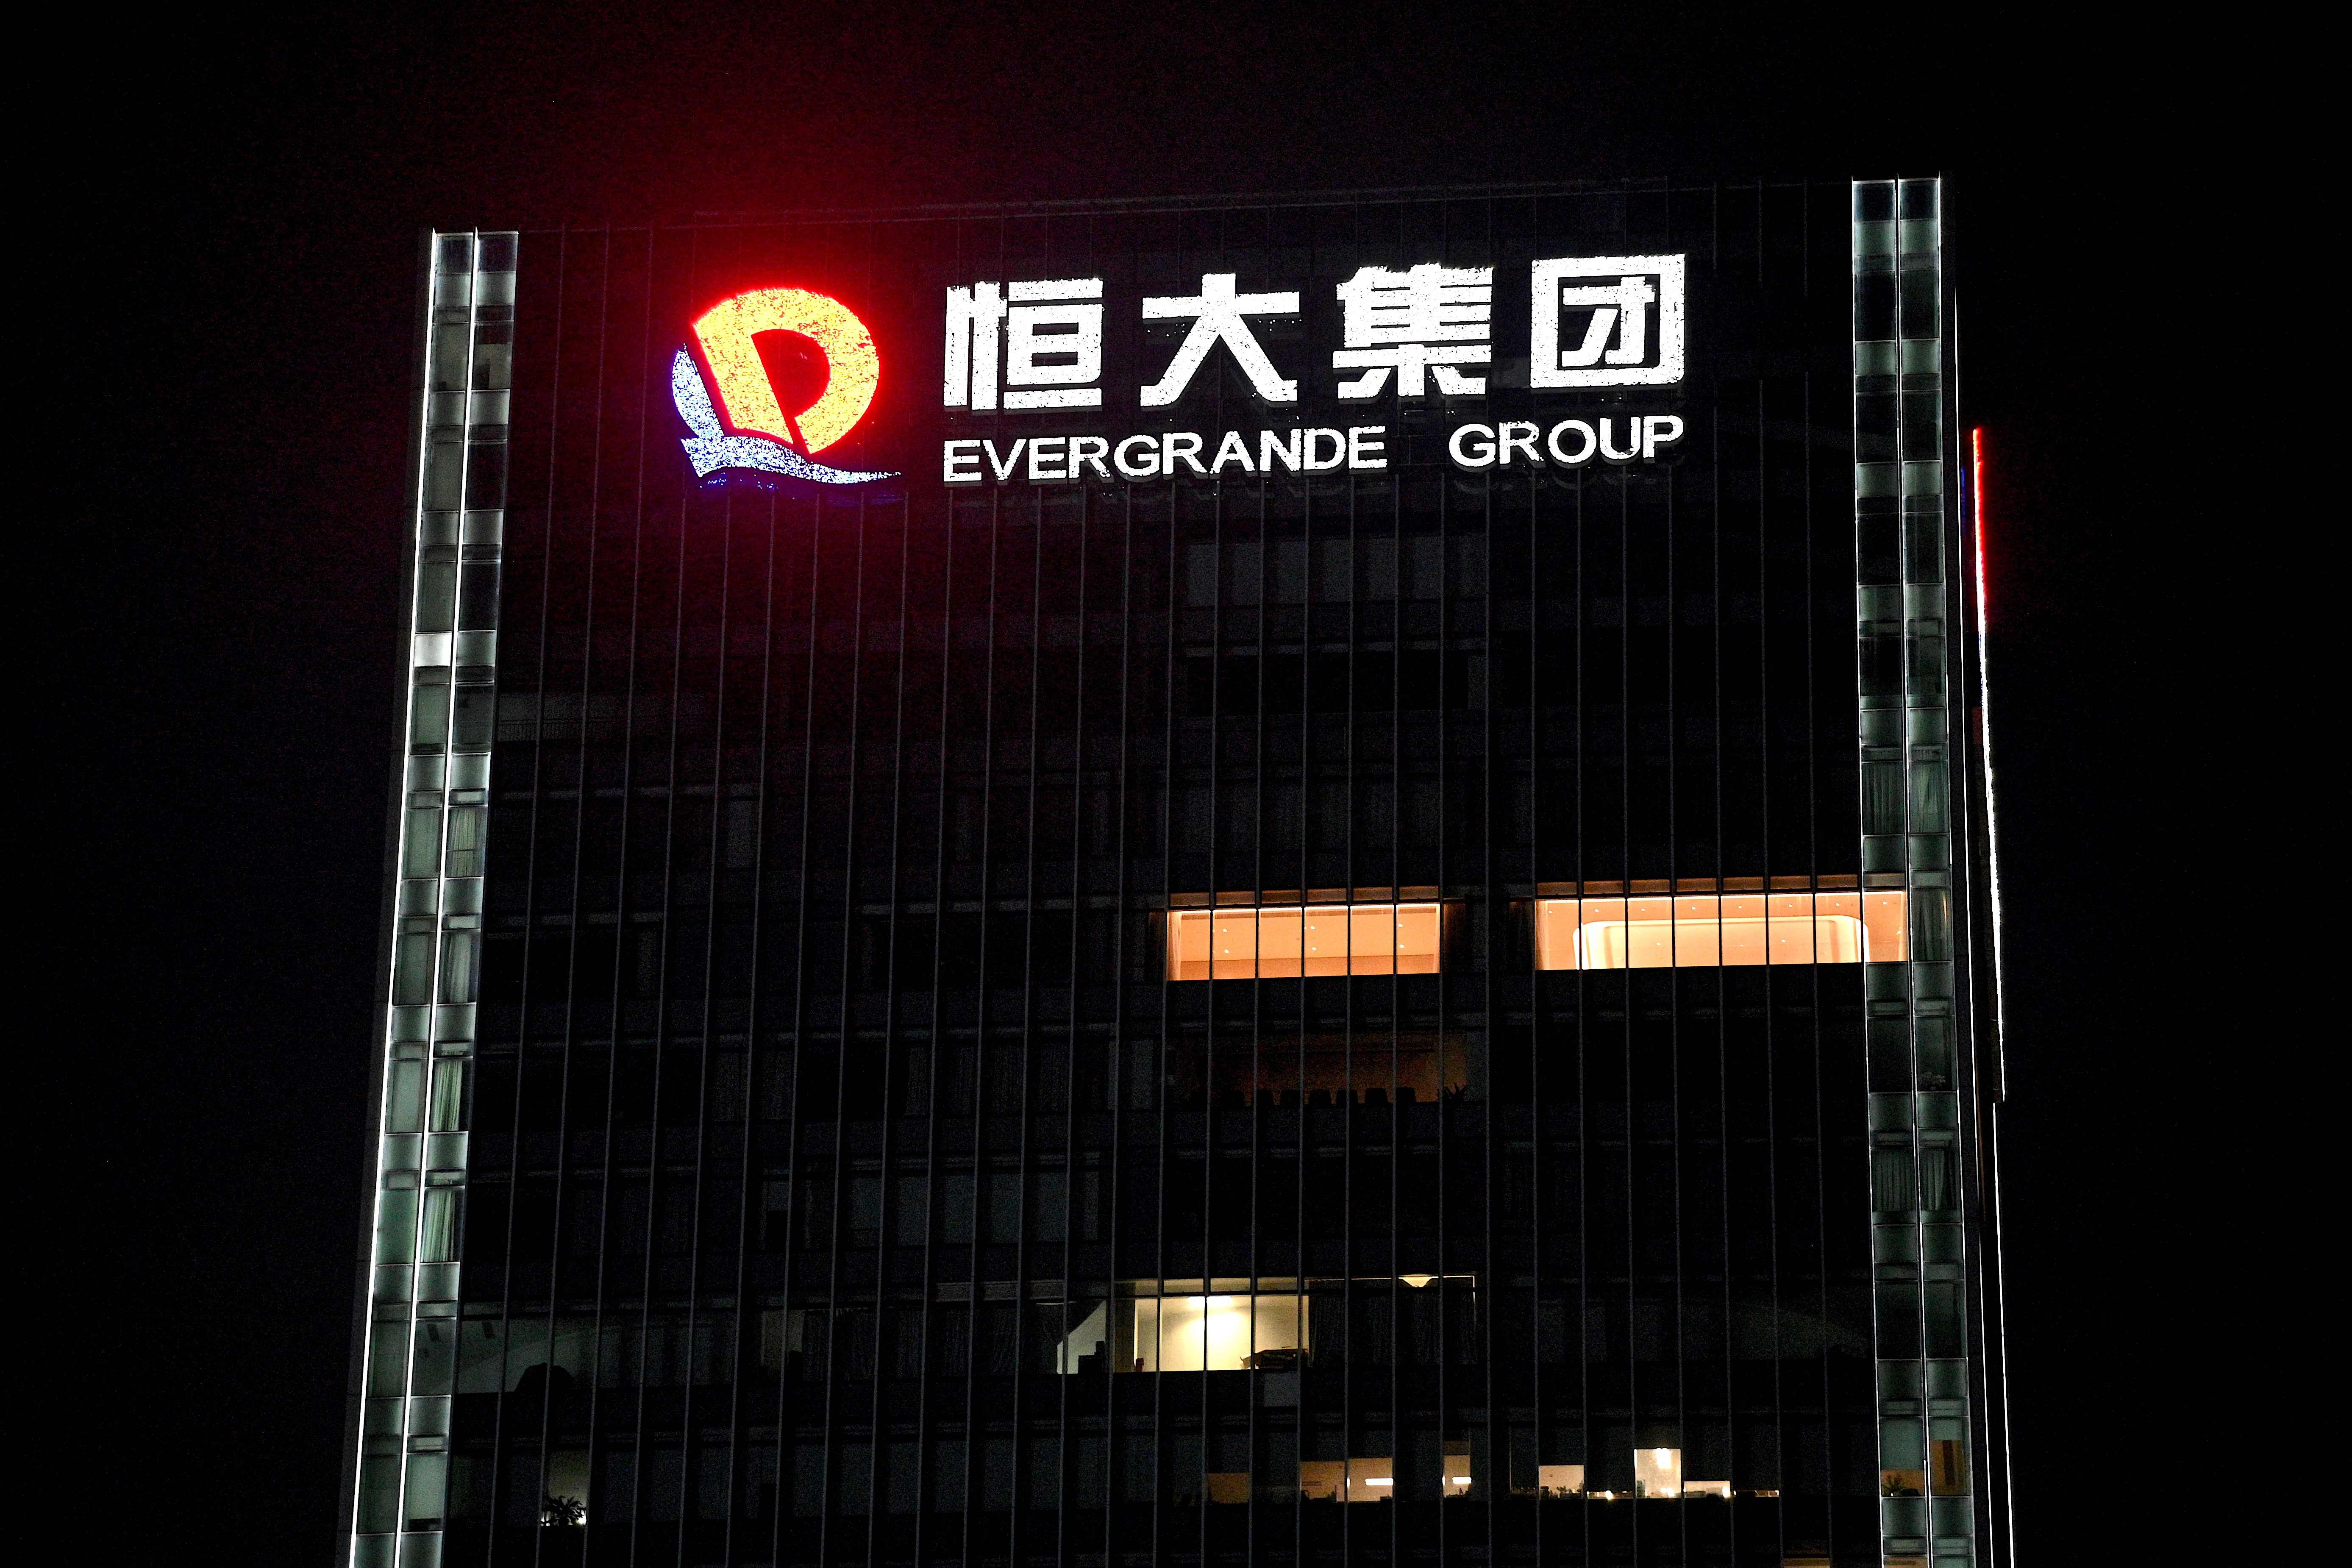 Sede de Evergrande en Shenzhen, China, el gigante inmobiliario que enfrenta dificultades sin precedentes para superar una crisis de liquidez. (Foto Prensa Libre AFP)